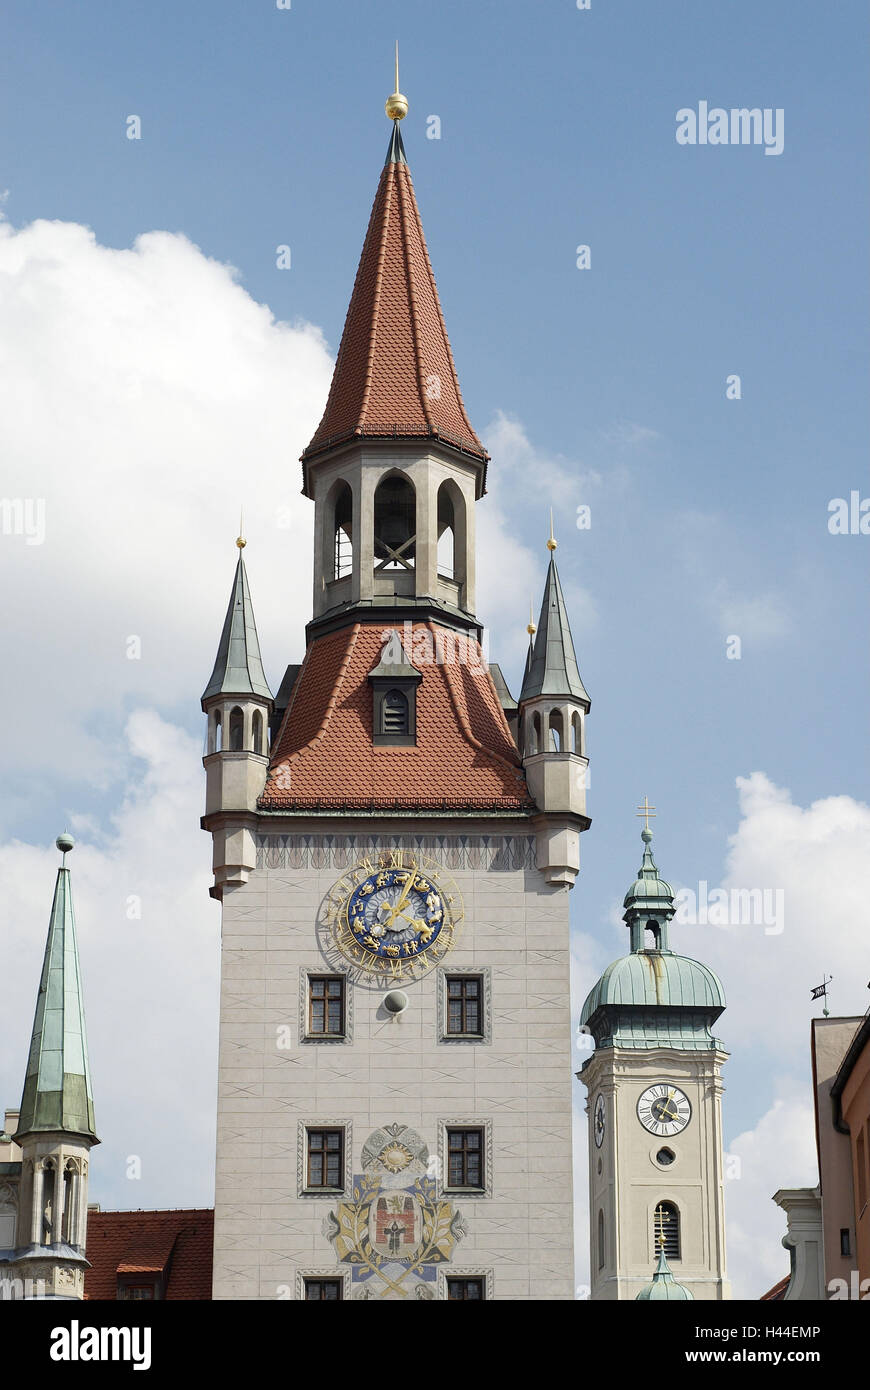 L'ancien hôtel de ville, l'attaque du conseil, clocher, horloges, Ciel, nuages, Germany, Bavaria, Munich, Banque D'Images